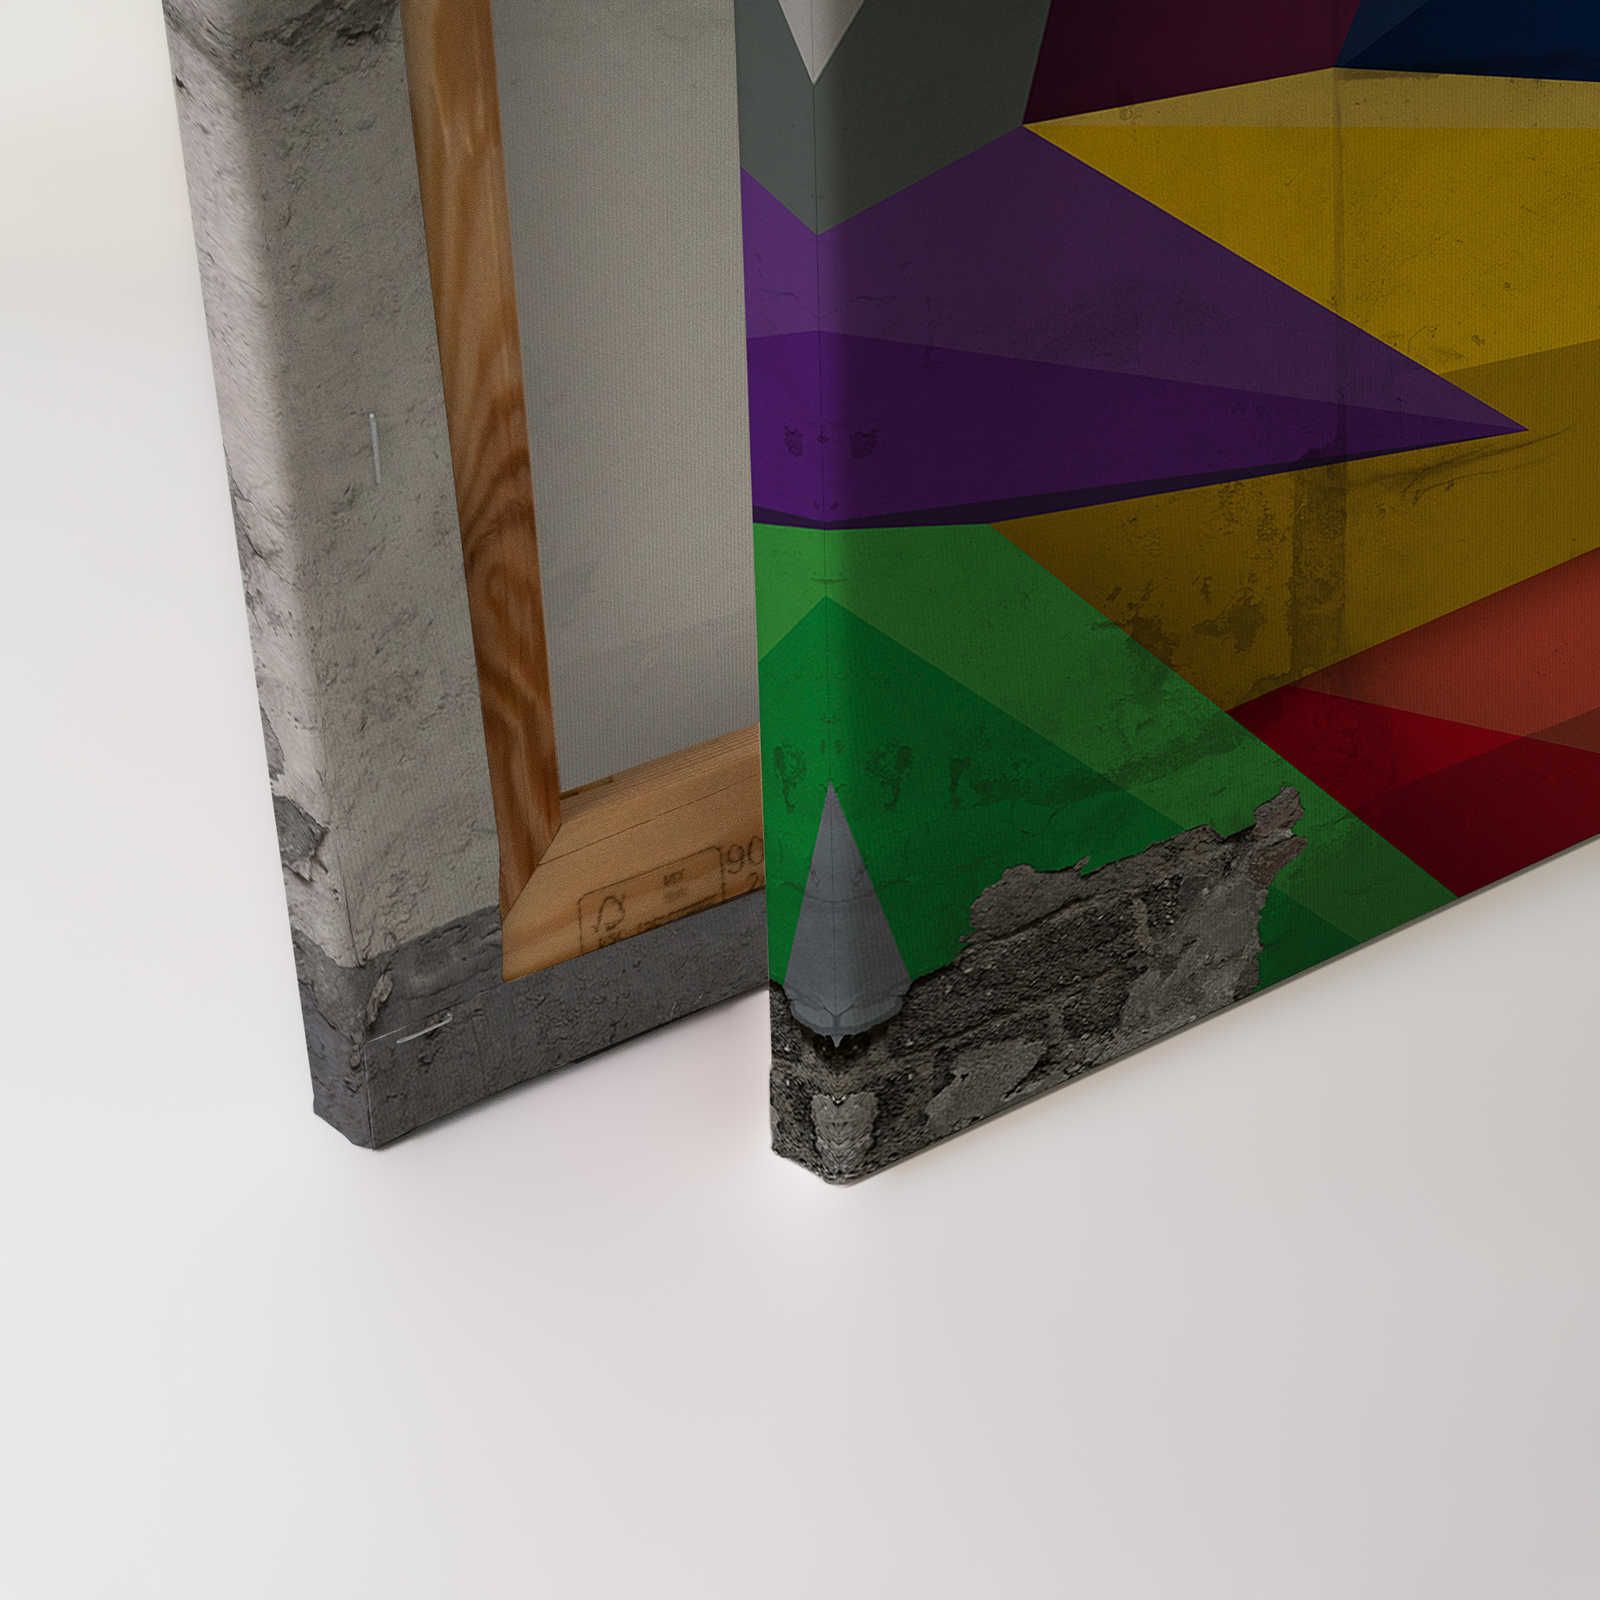             Pittura su tela effetto cemento con grafica - 0,90 m x 0,60 m
        